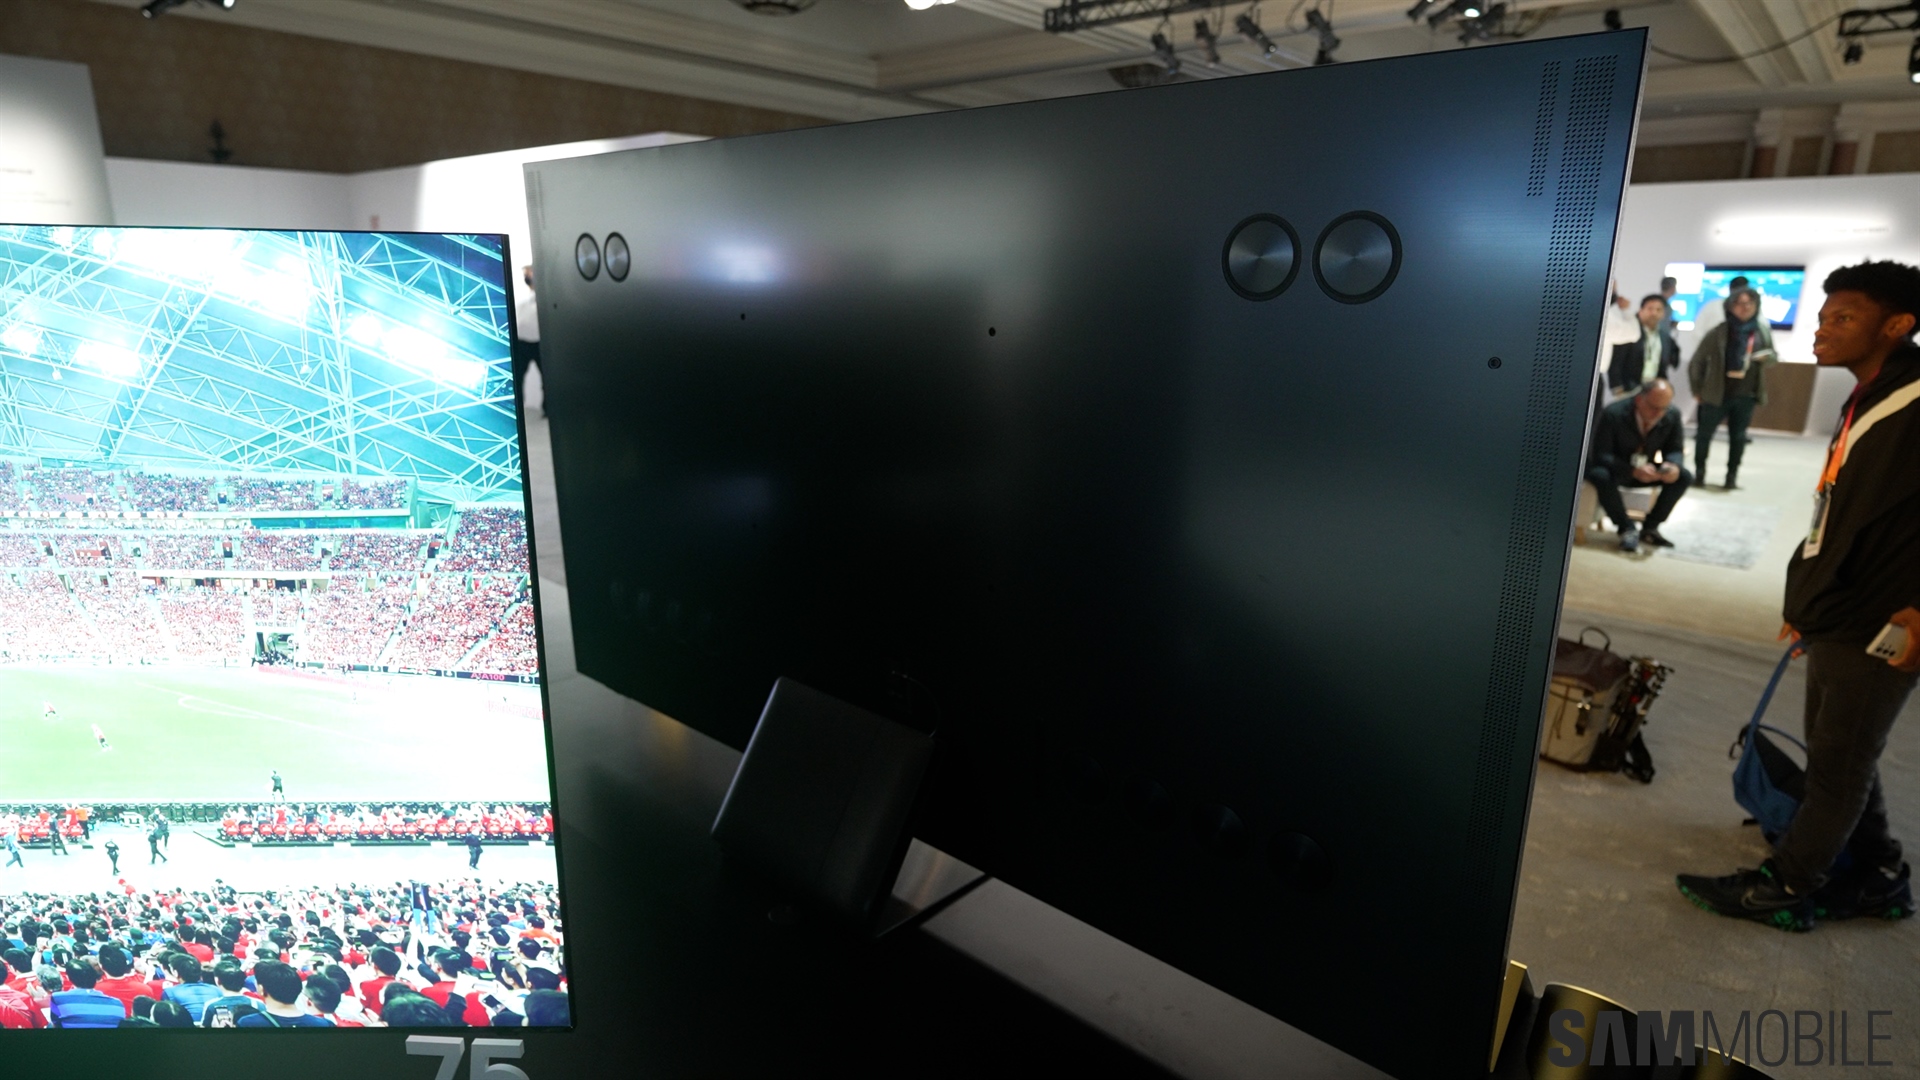 Samsung's new 98-inch 8K mini-LED makes 8K TVs finally make sense